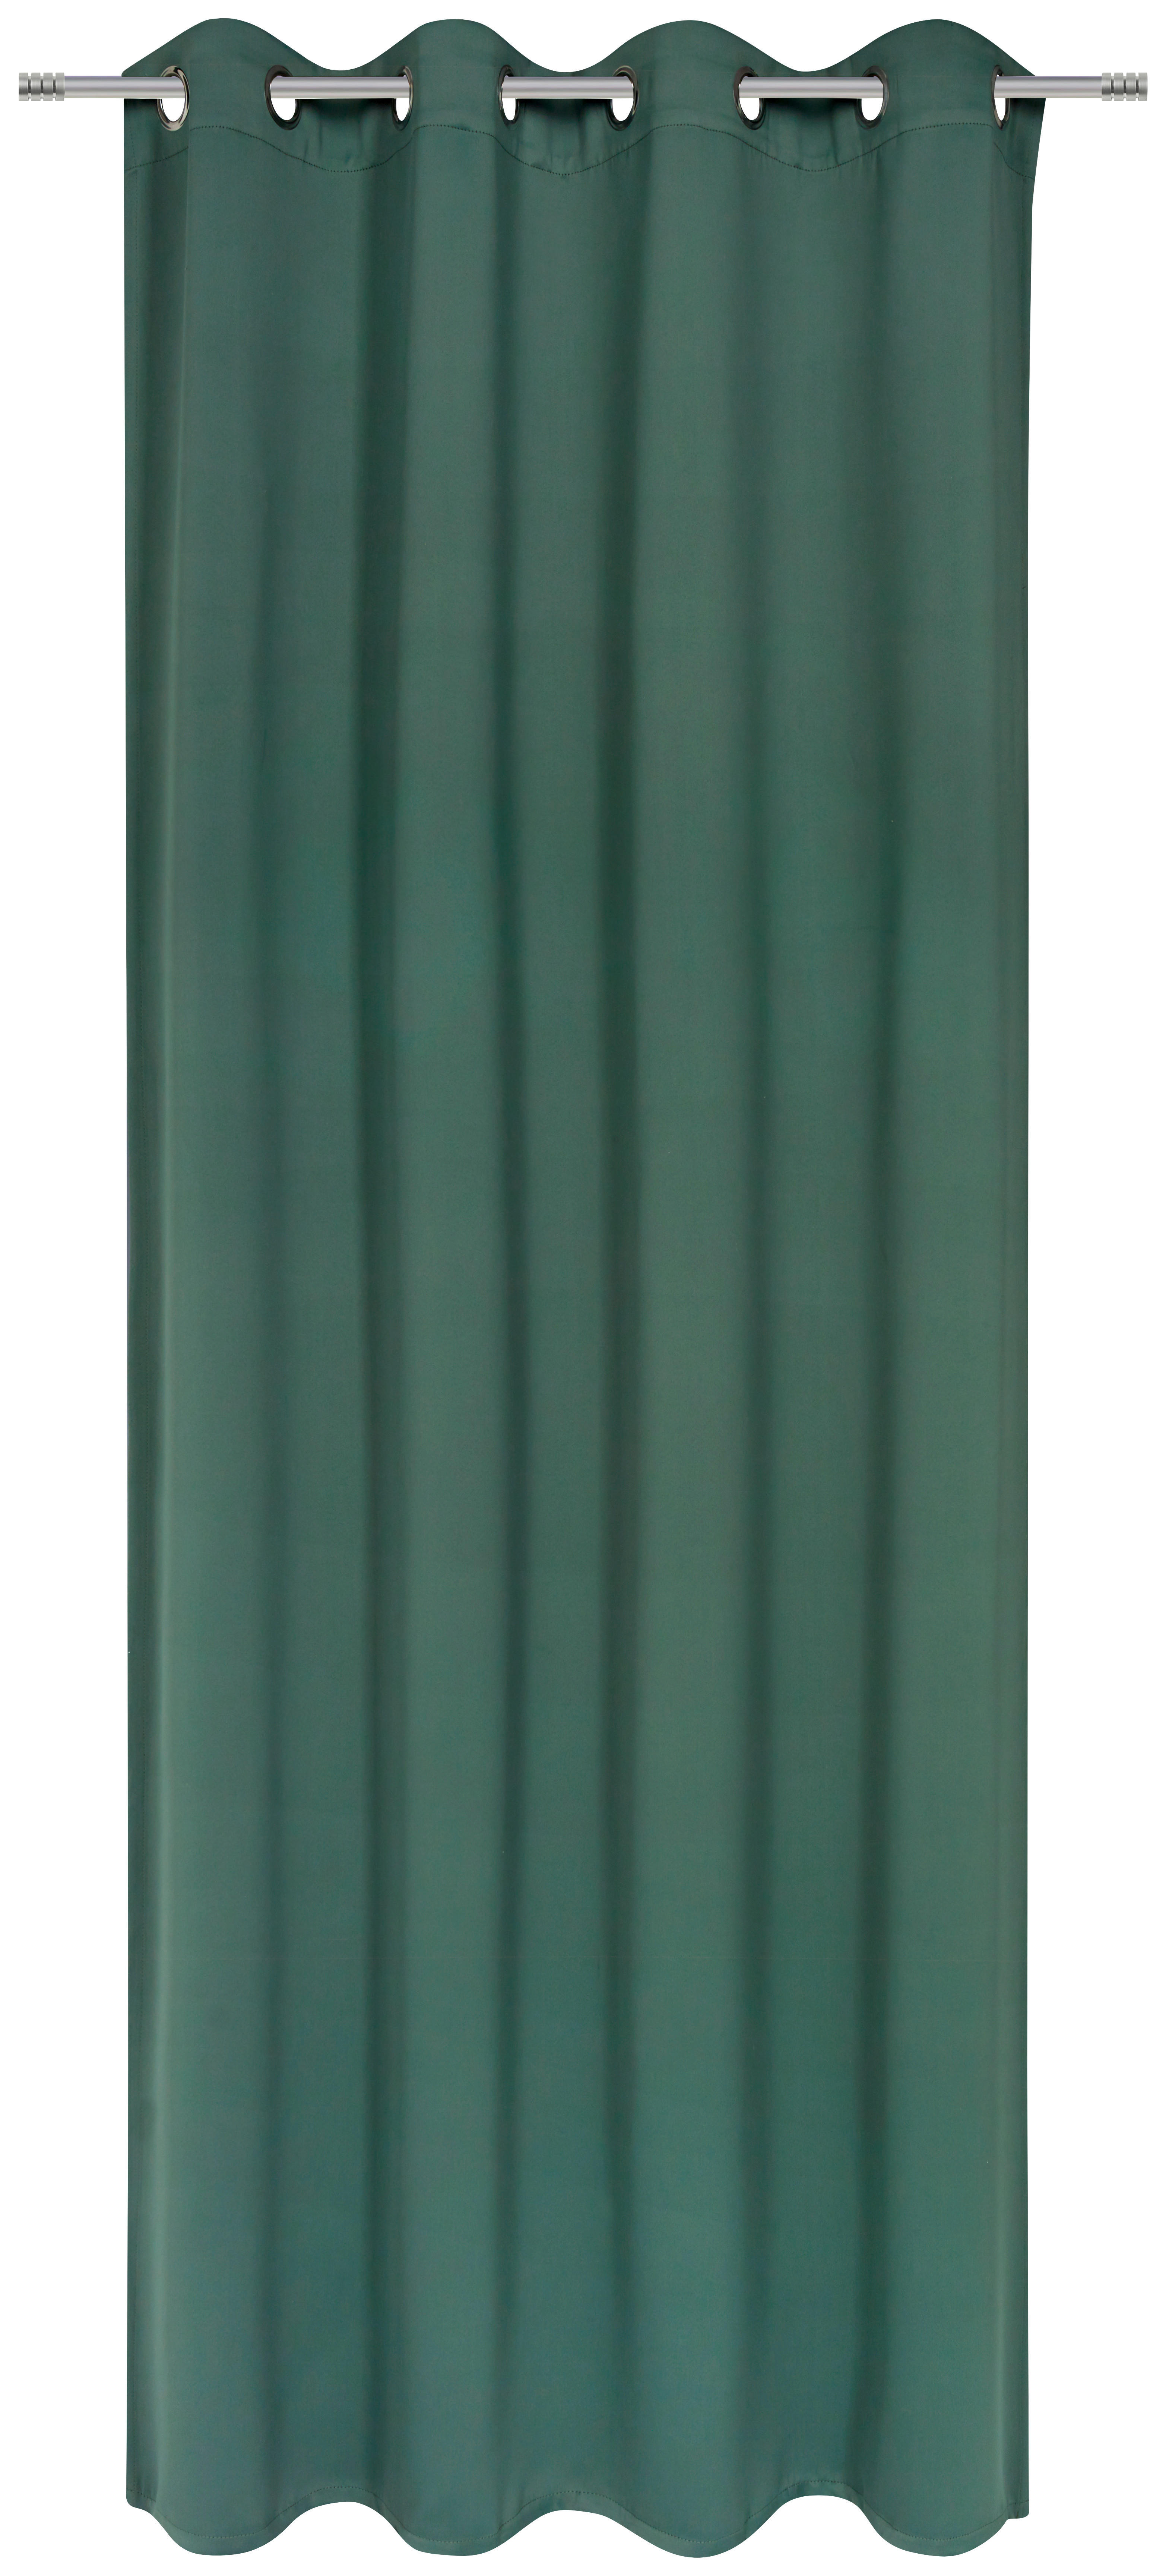 GARDINLÄNGD black-out (mörkläggande)  - grön, Basics, textil (140/245cm) - Esposa